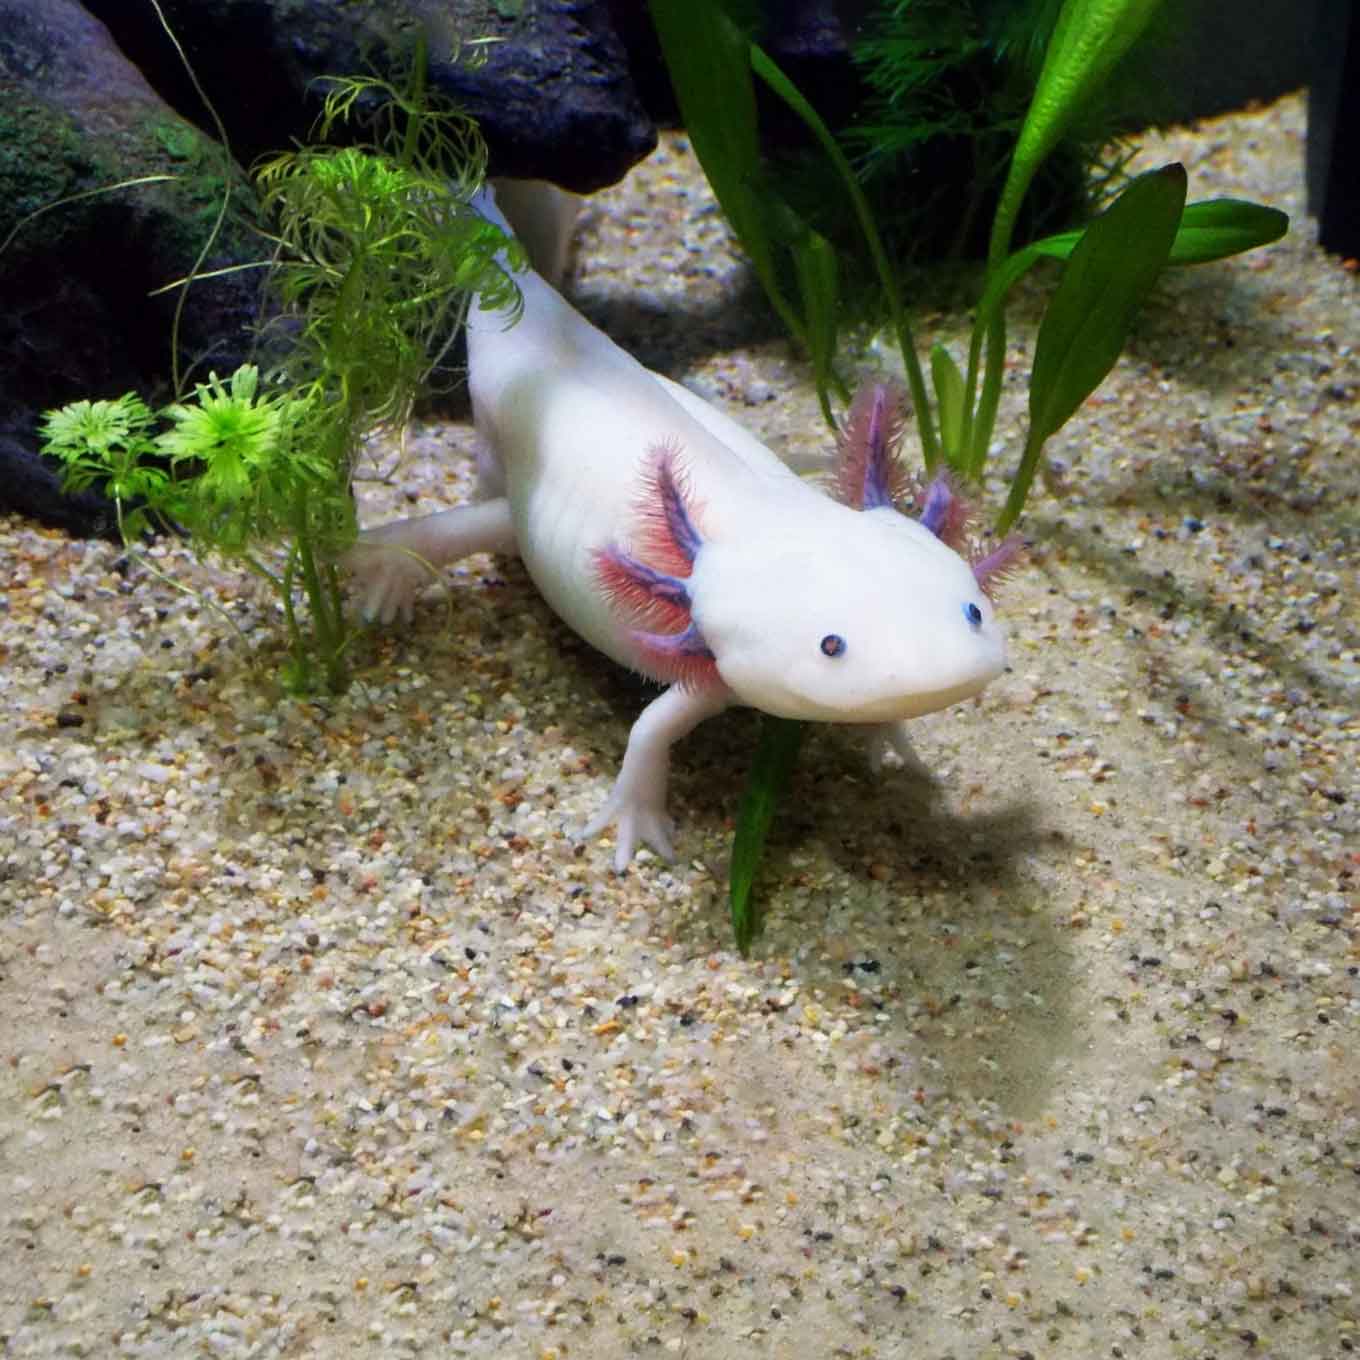 axolotl in captivity